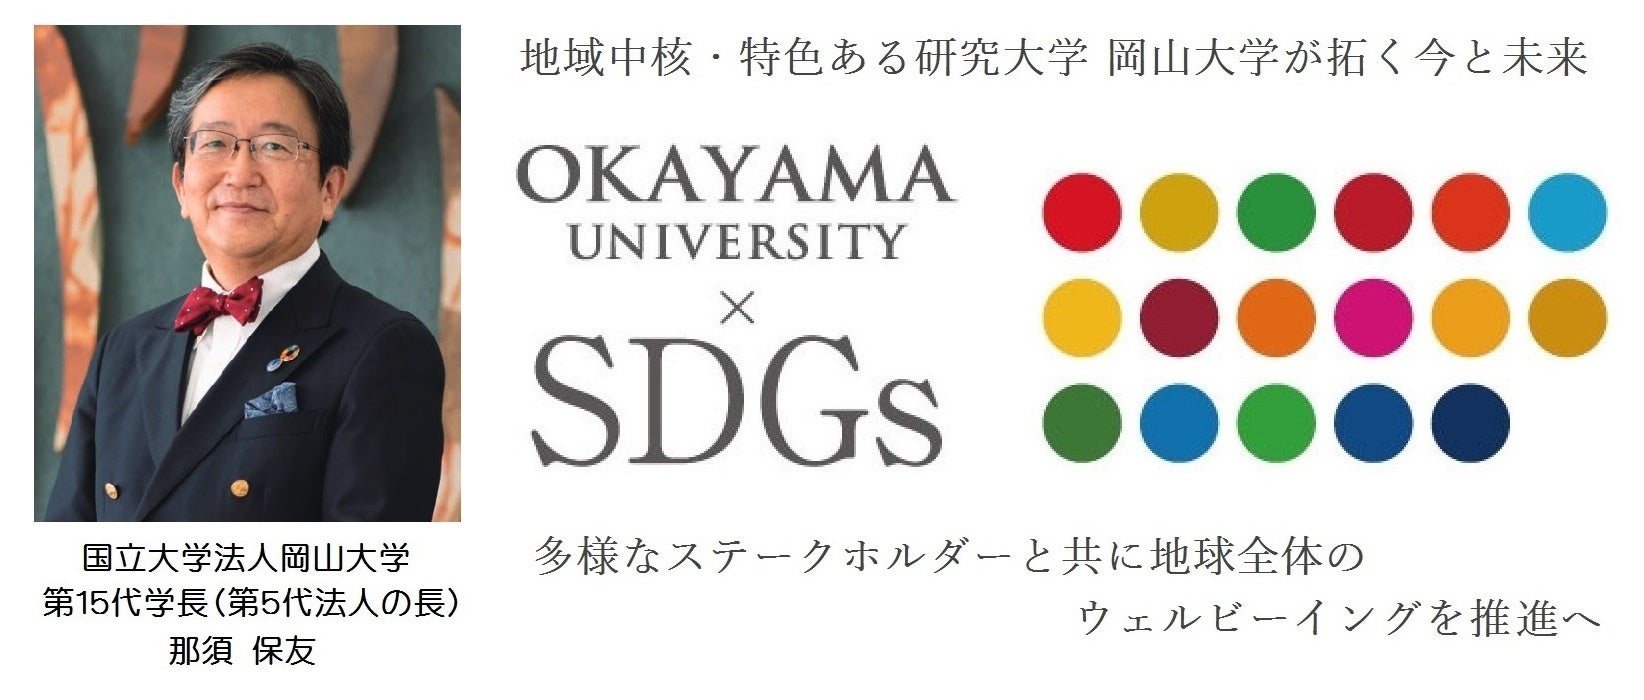 【岡山大学】遺伝情報を活用した健康増進の実現に向けて連携協定を締結しました